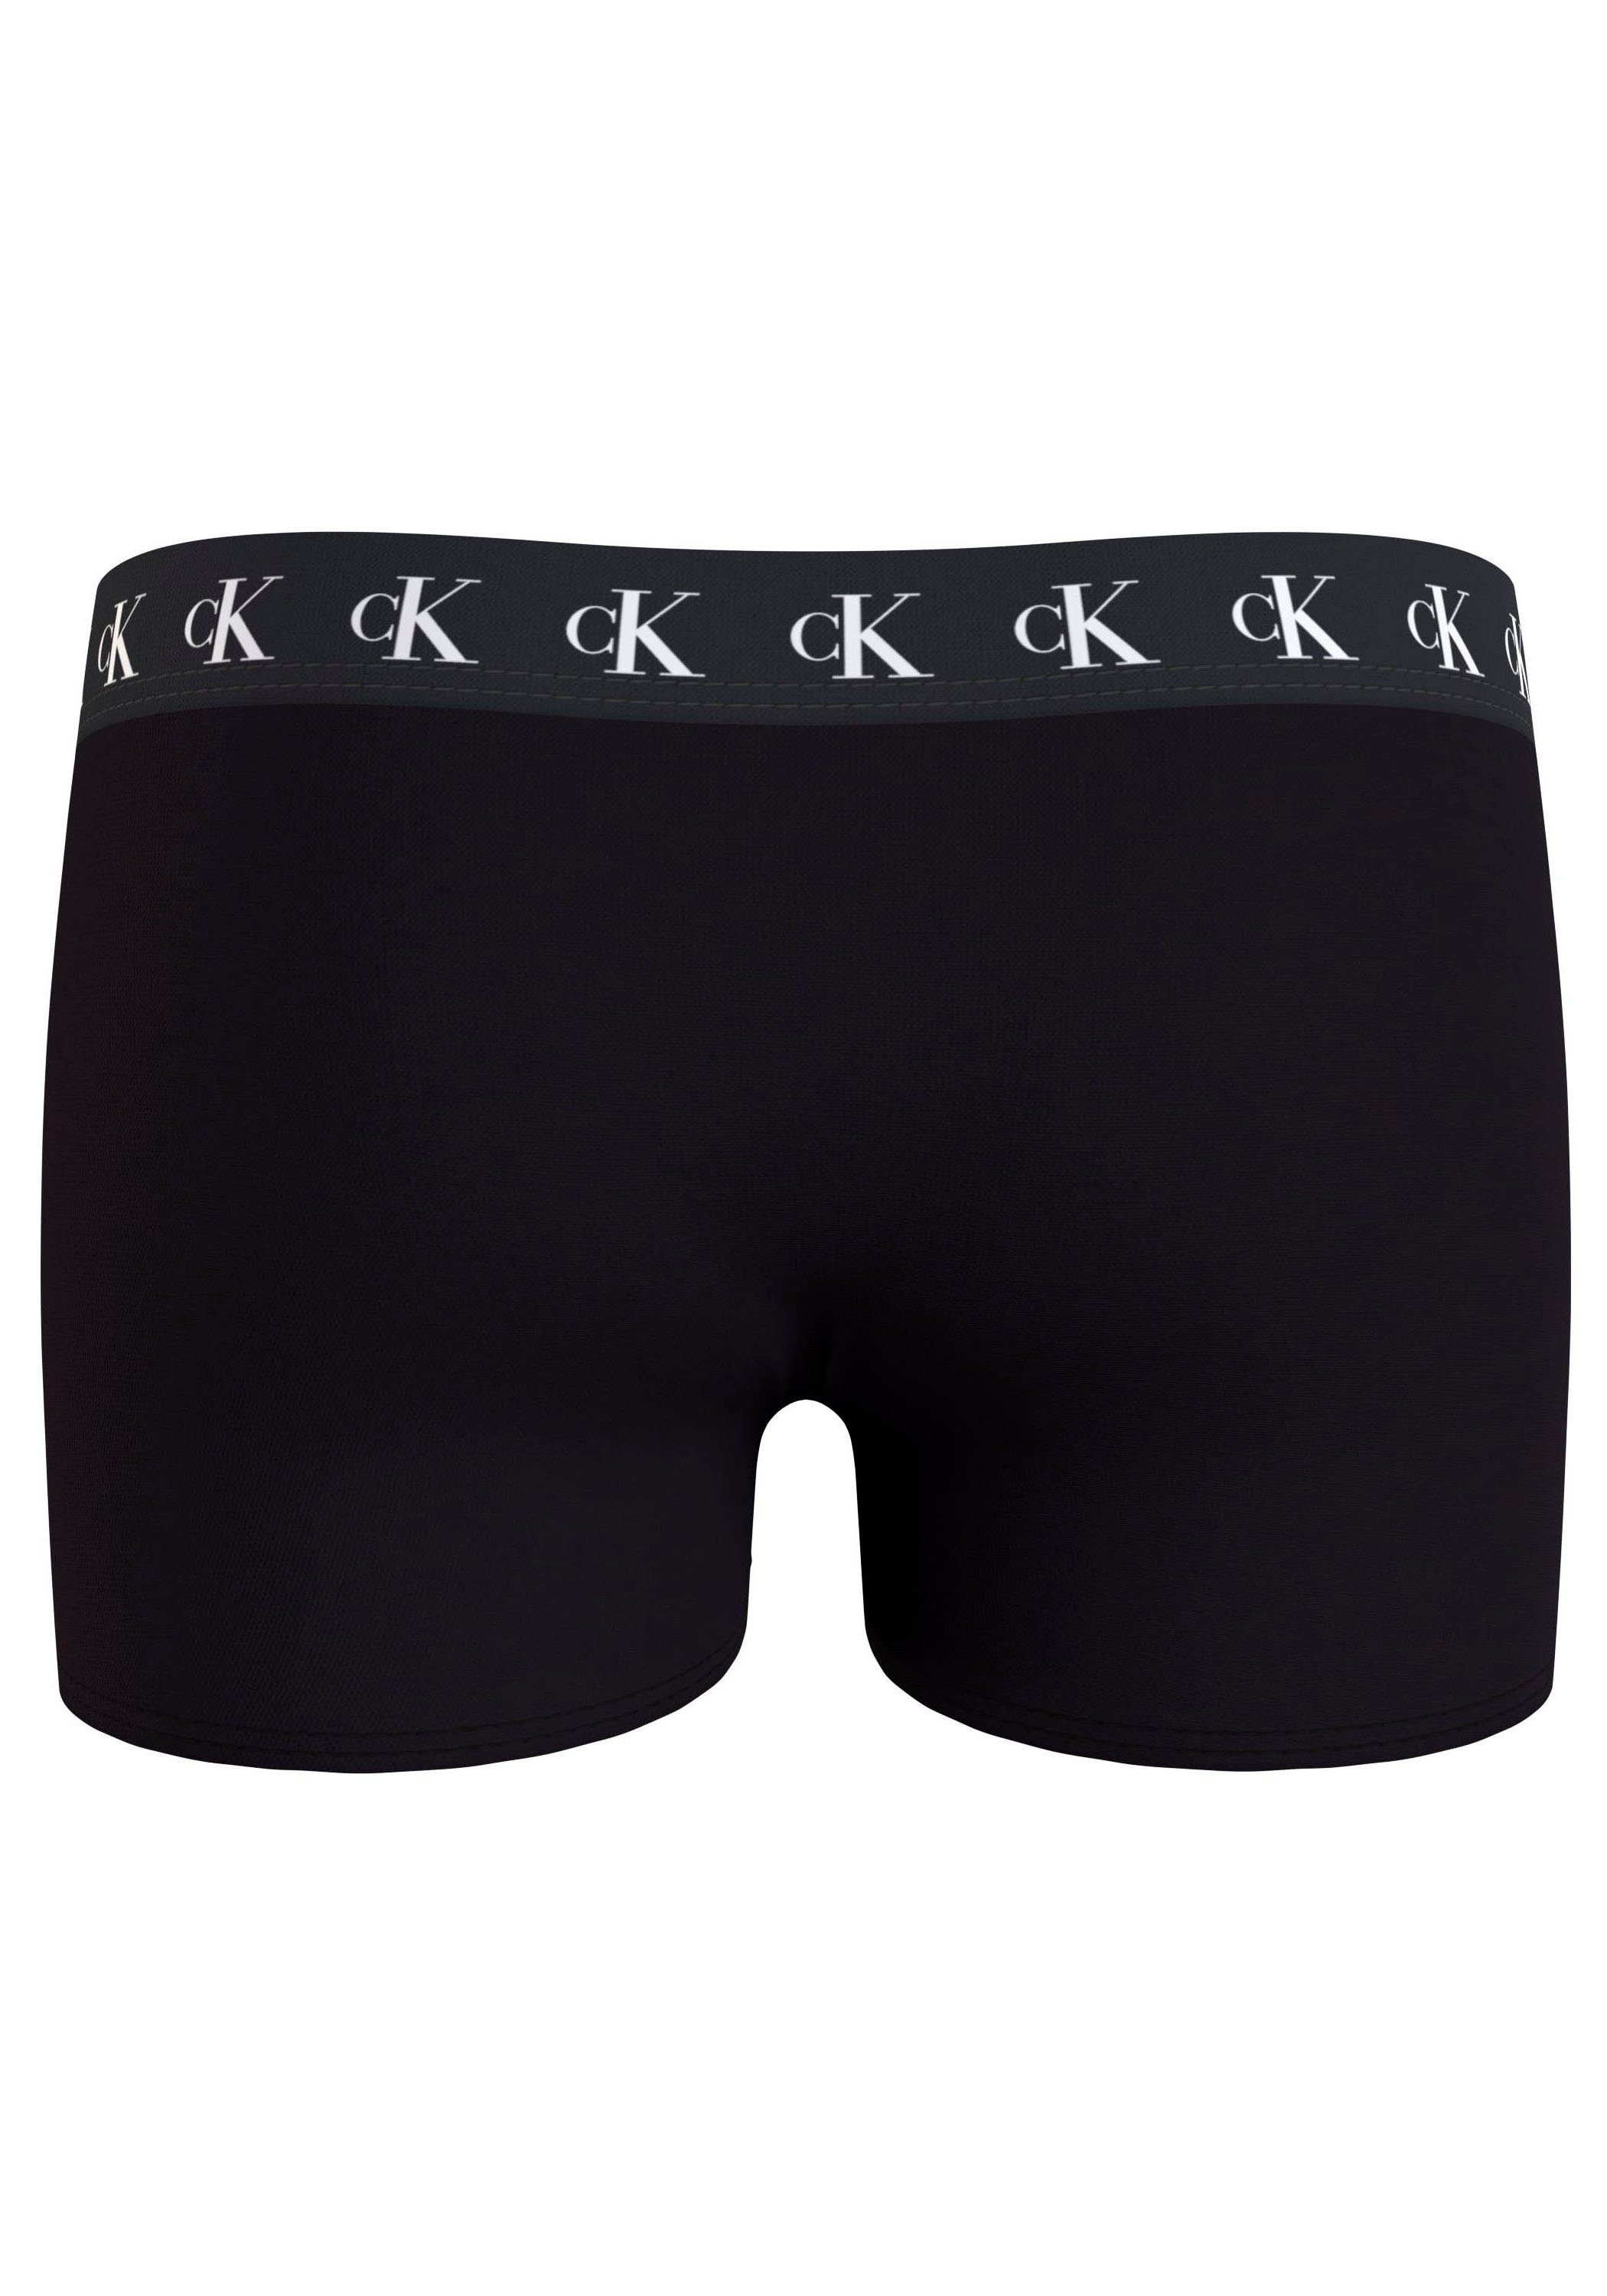 3PK TRUNK Underwear Calvin (Packung, Markenlabel Calvin Klein Bund Slip Klein Tarpsblue/Pvhwhite/Pvhblack mit 3er-Pack) am